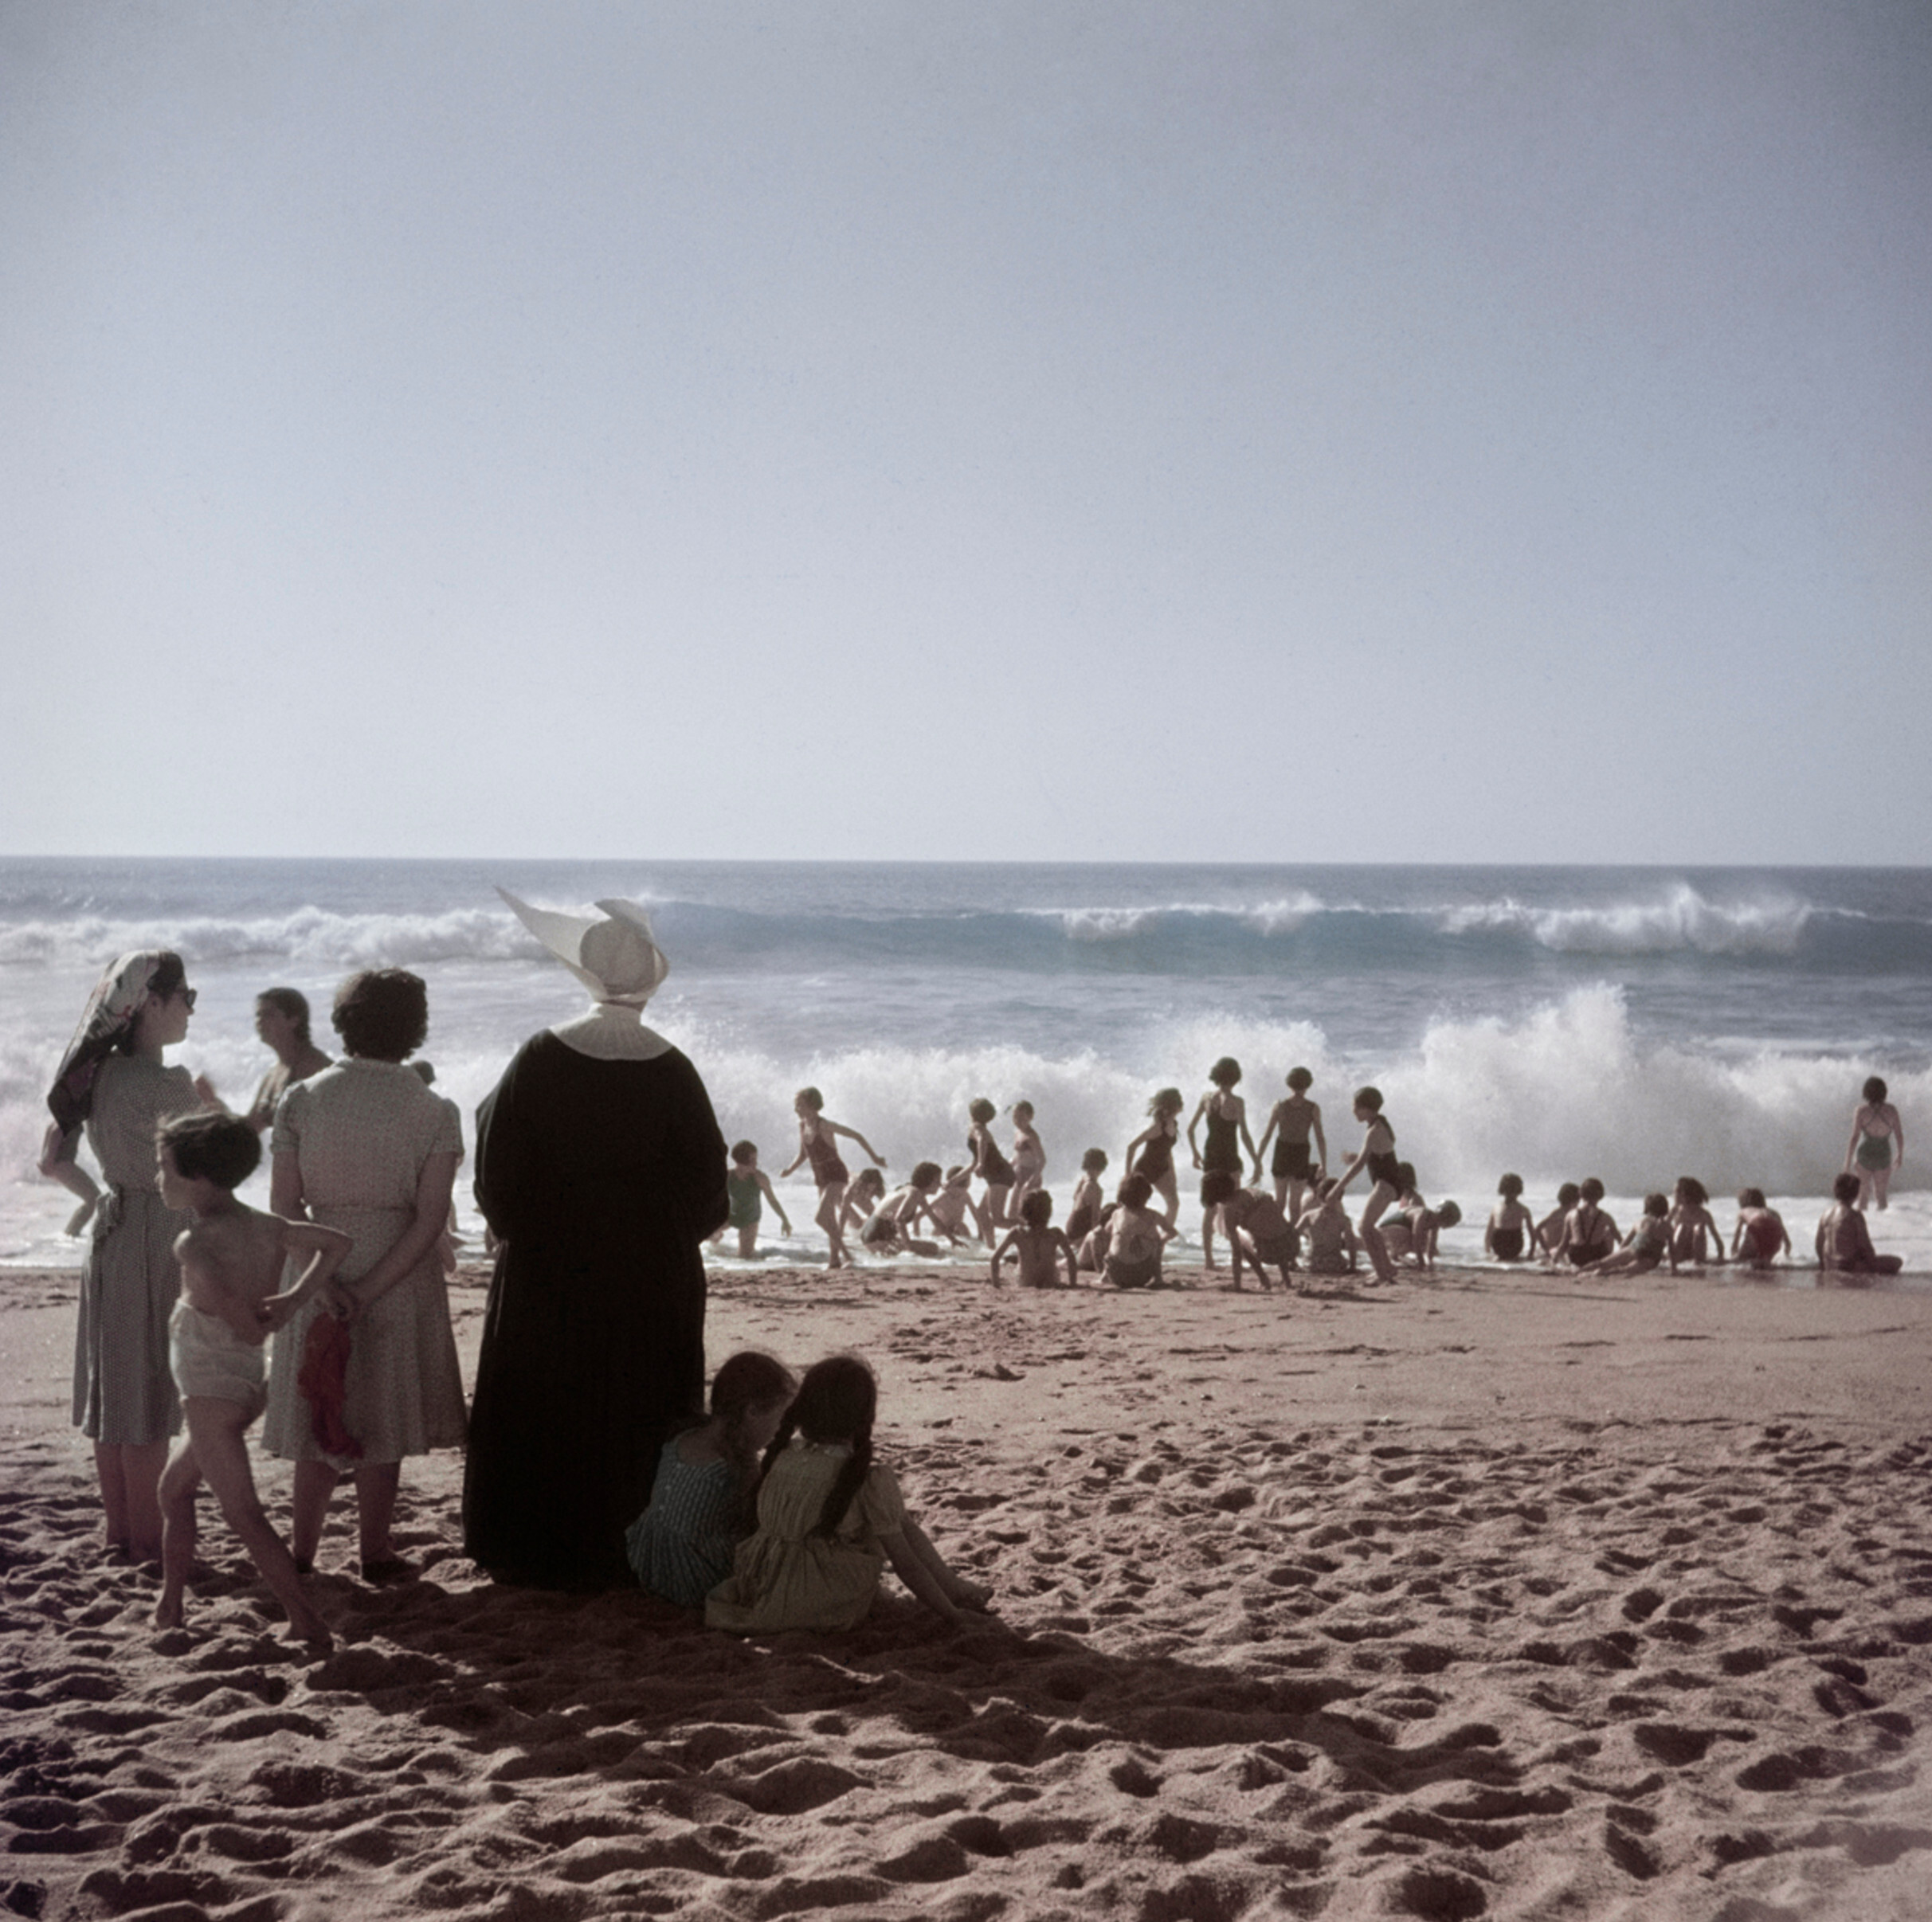 Монахиня и купальщицы на пляже, Биарриц, Франция, август 1951 года.  Фотограф Роберт Капа